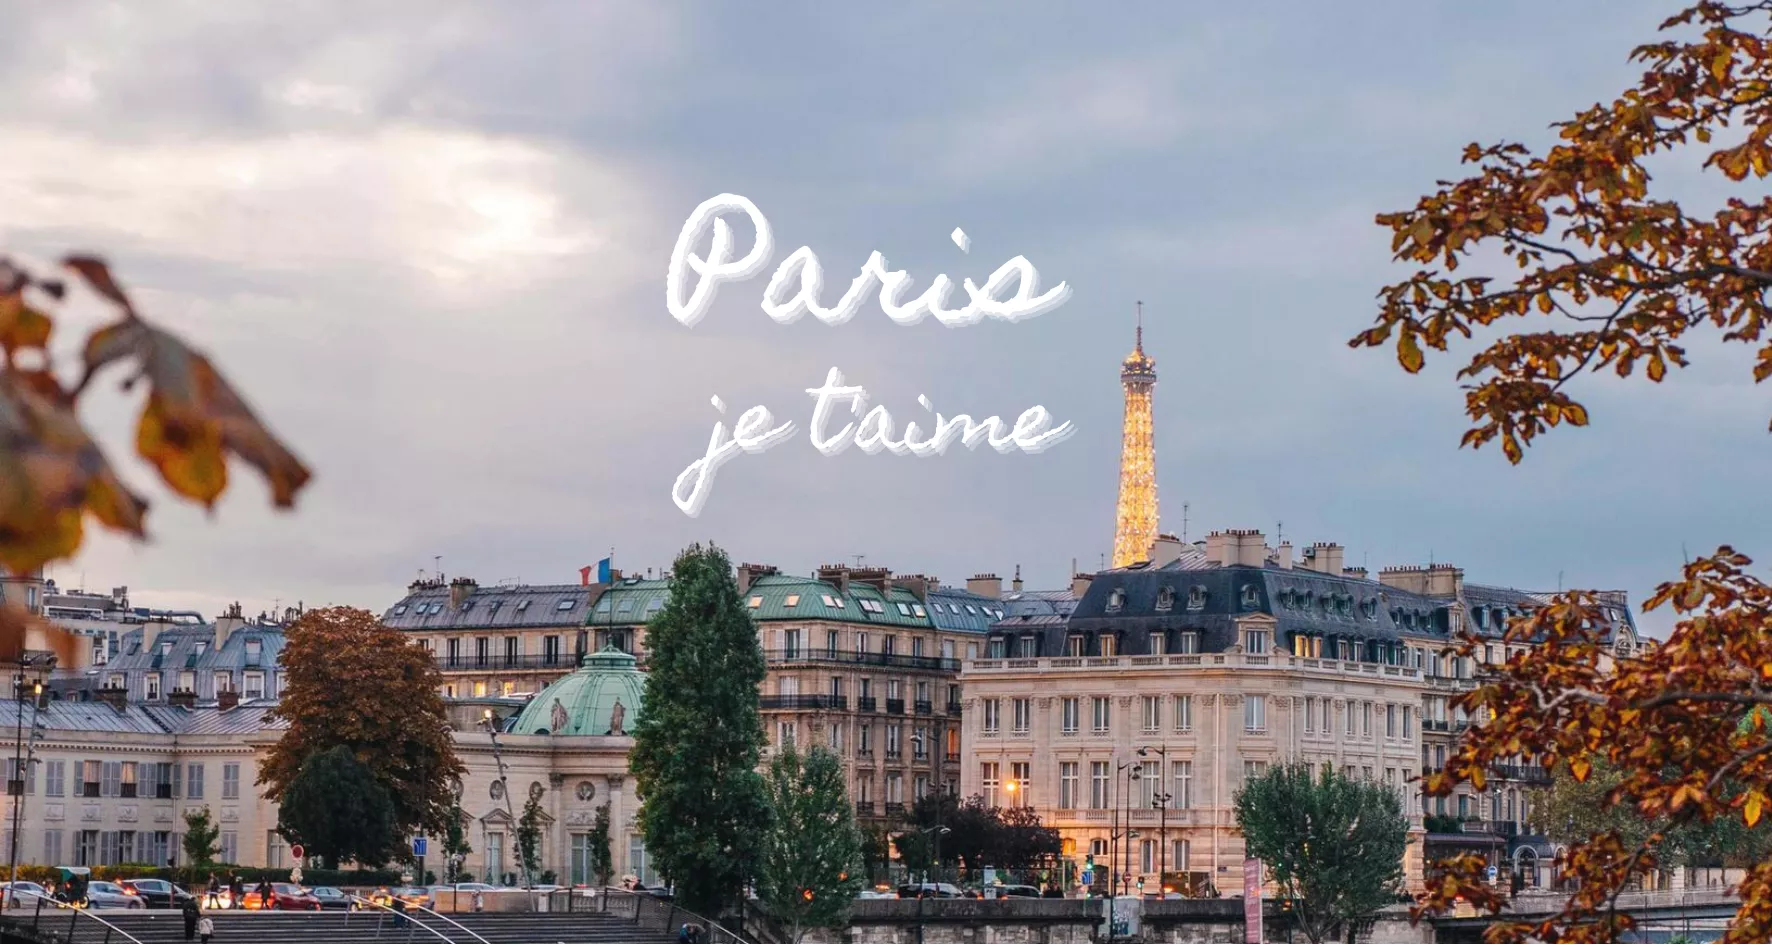 Main image of article: Les bons plans de Paris